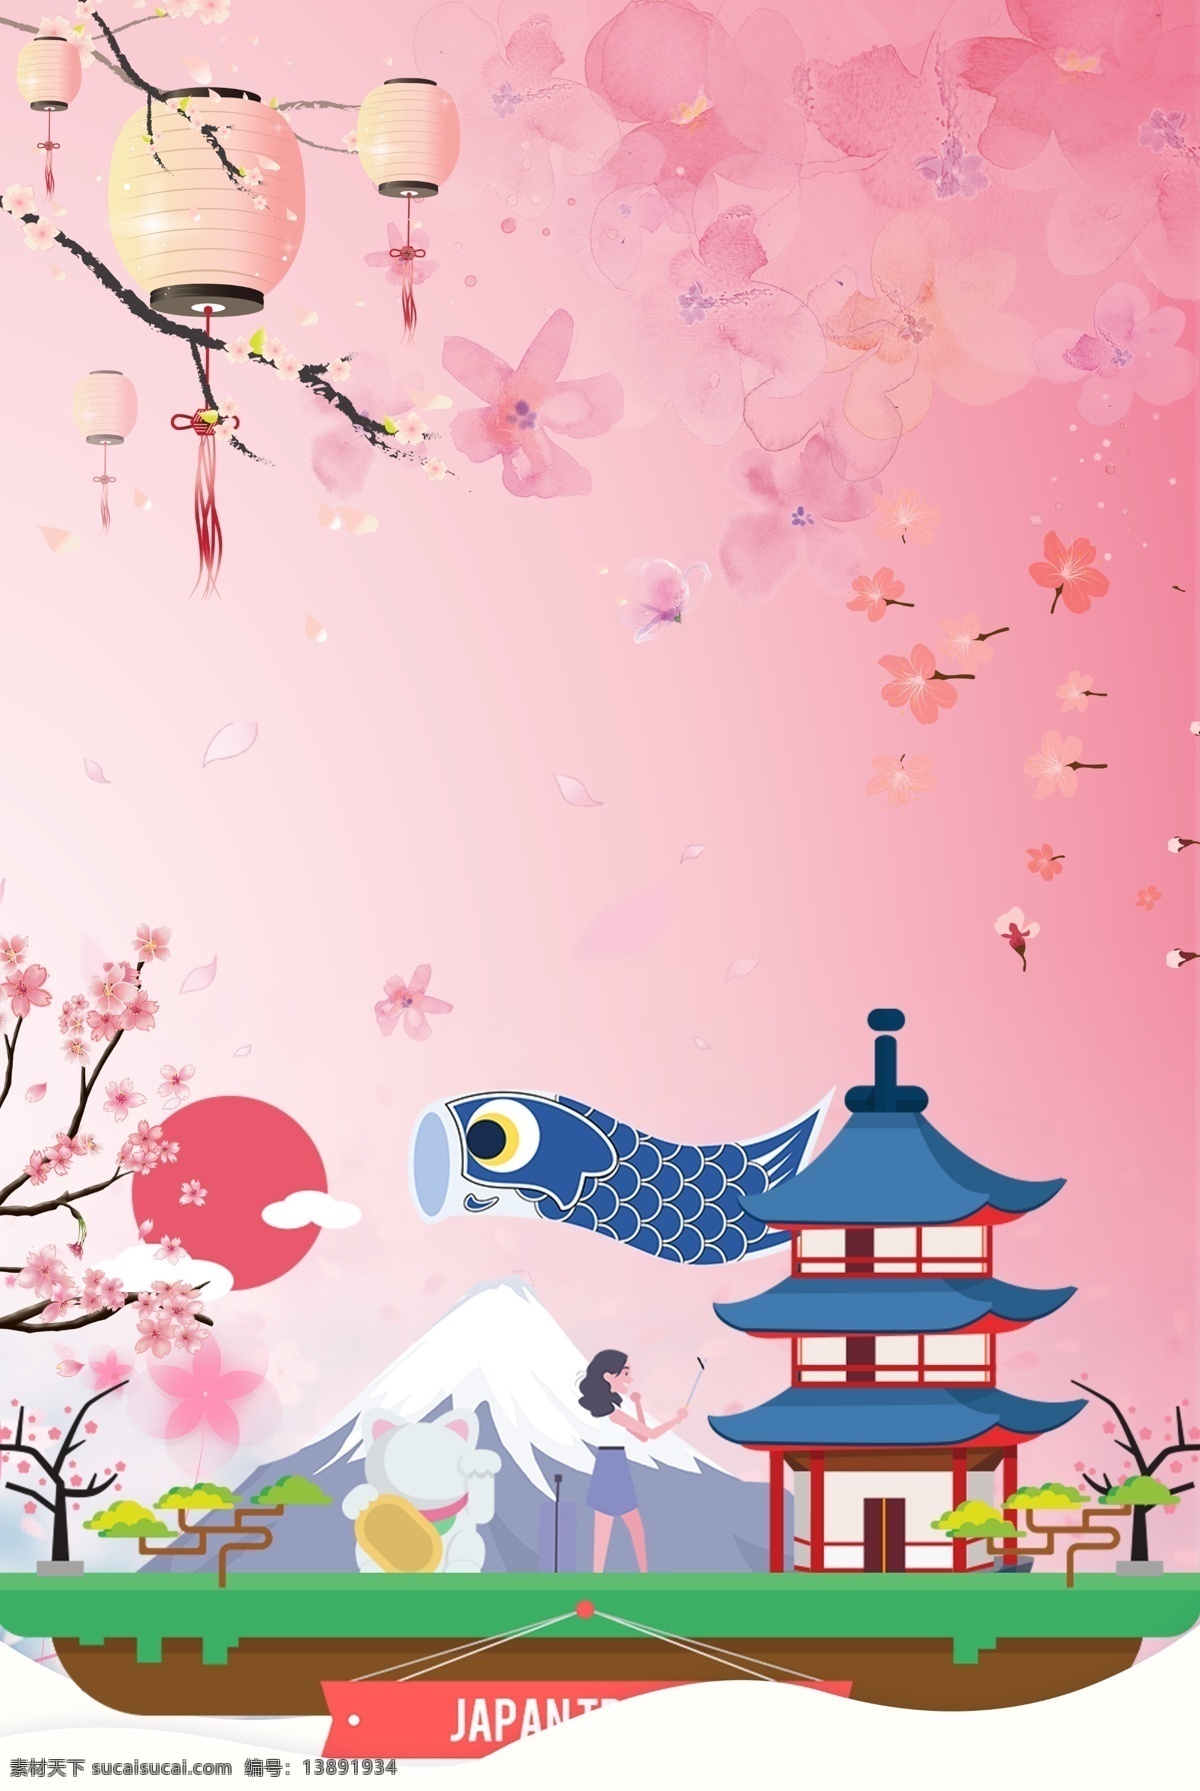 创意 简约 日本旅游 合成 背景 旅游 环球 旅行 樱花 景点 日本建筑 日本游 国外游 卡通